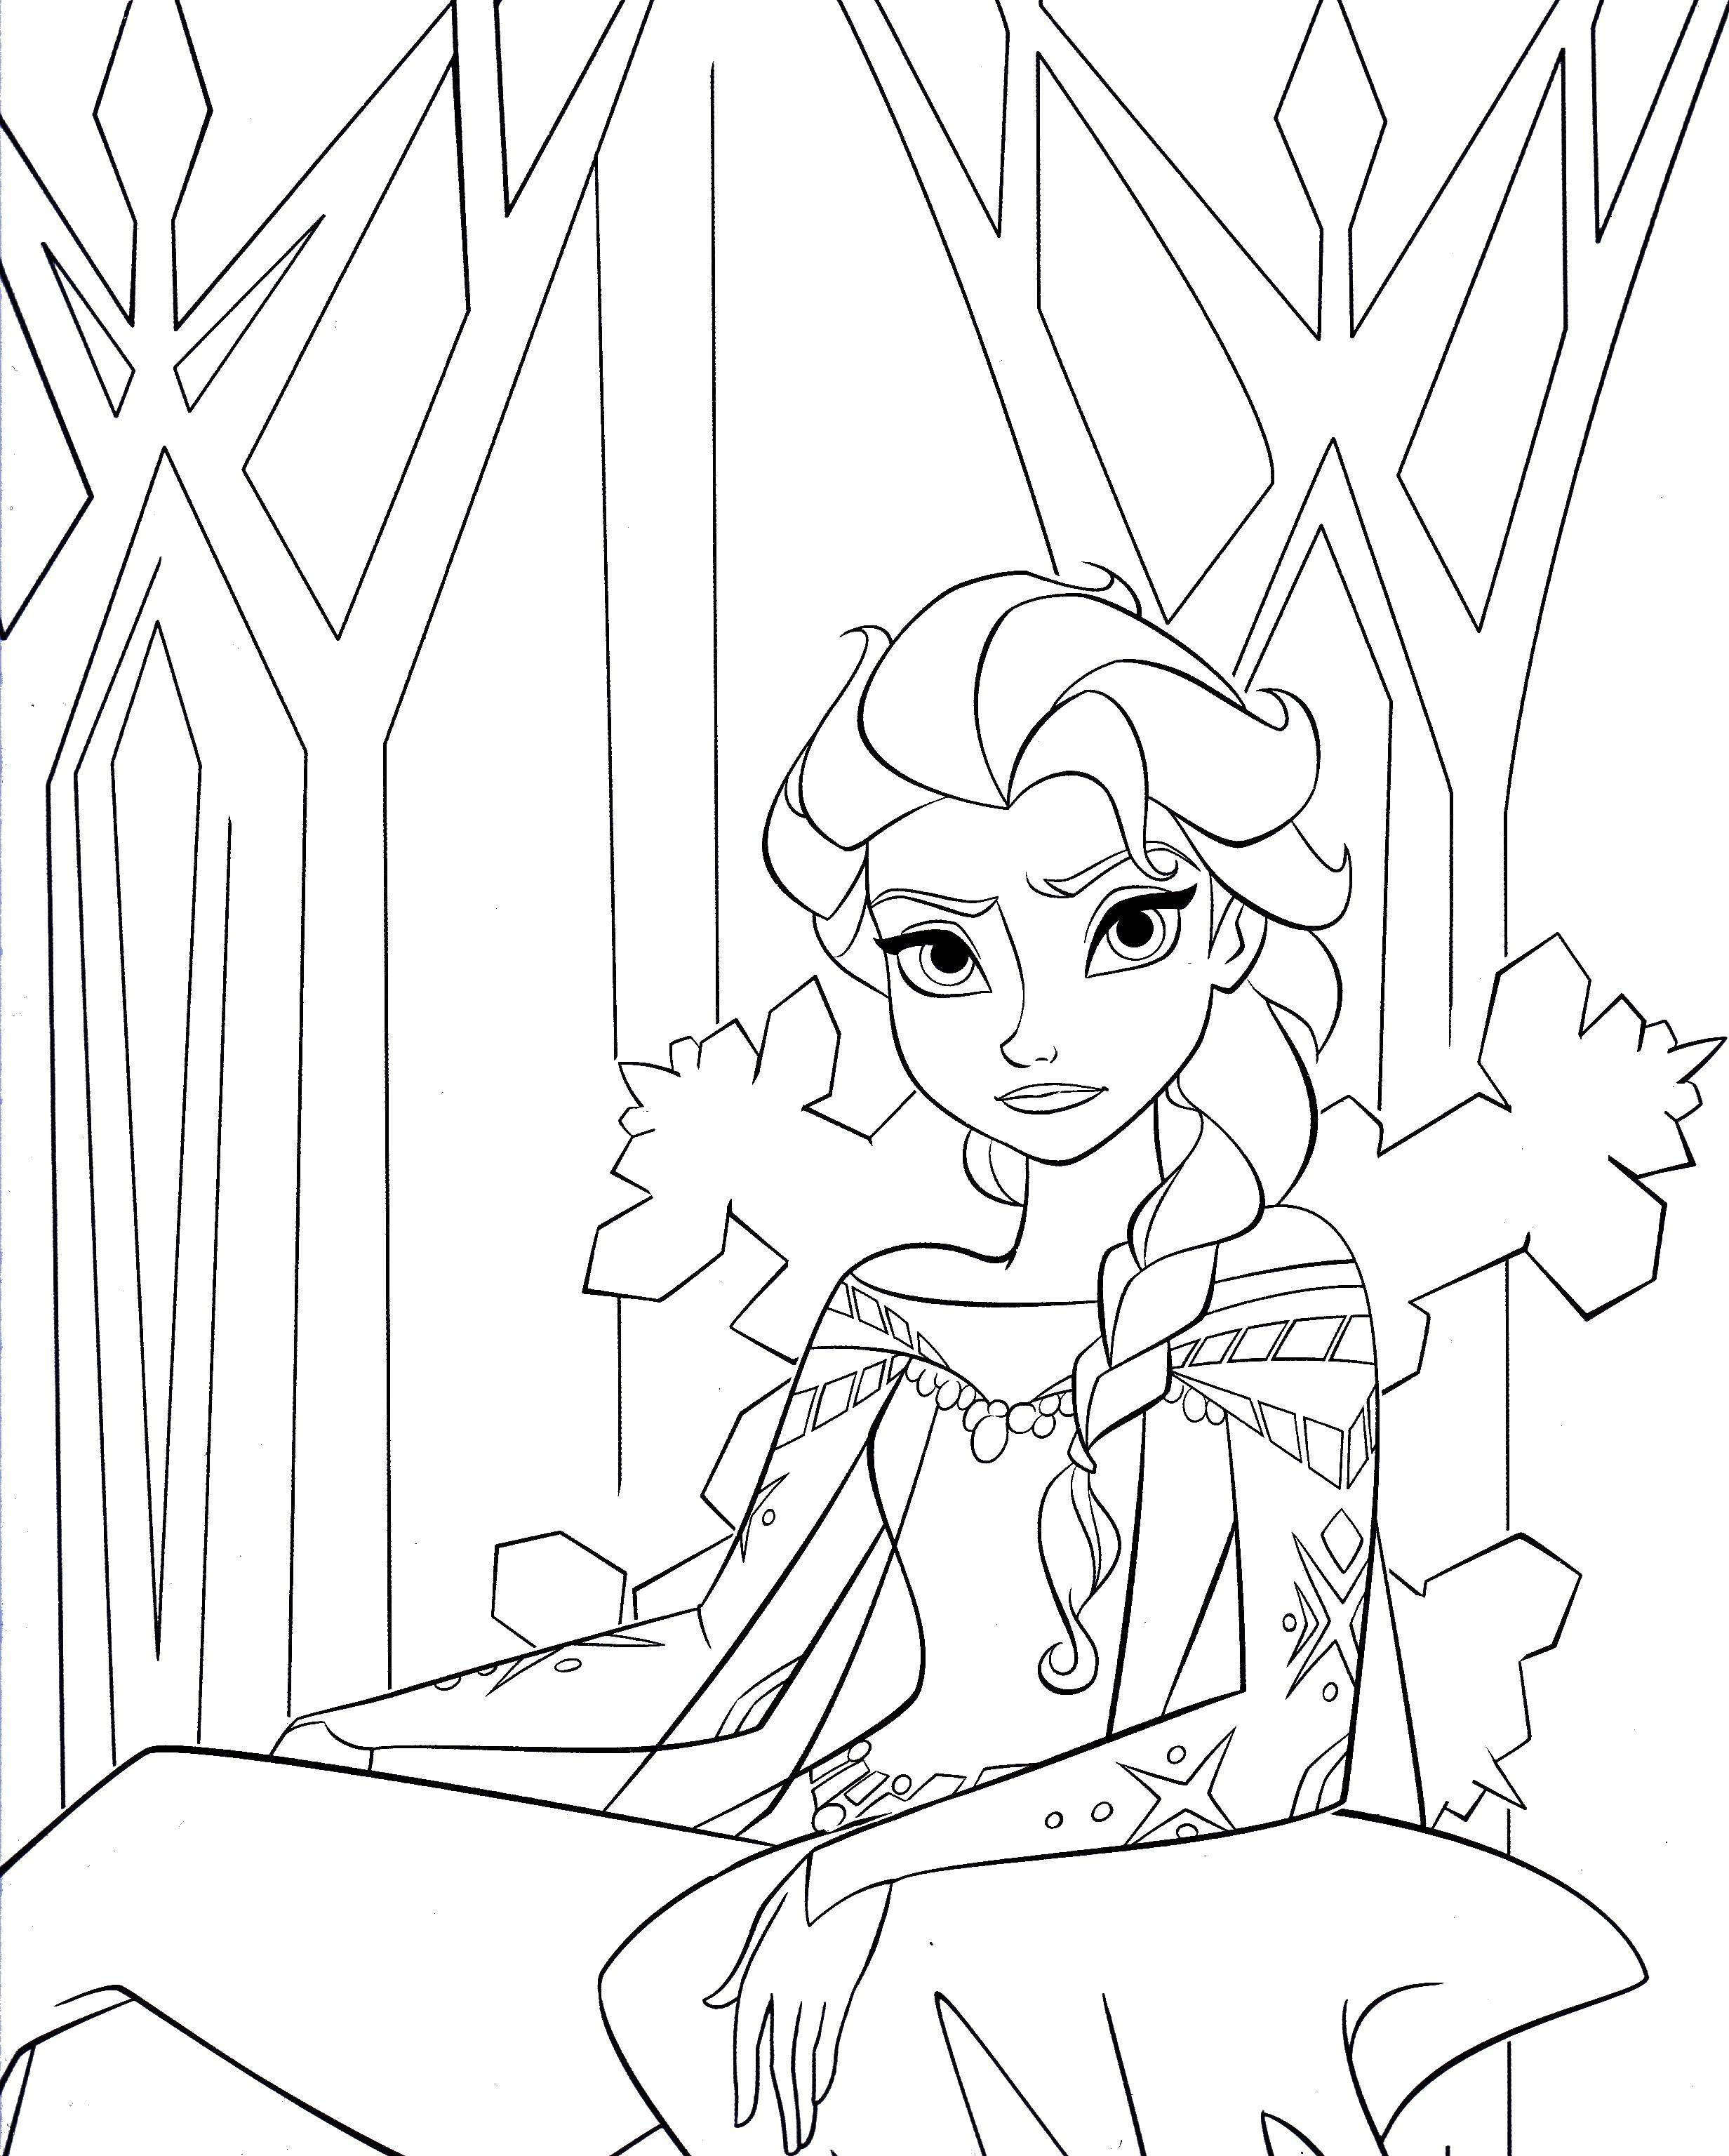 Coloring Elsa. Category Disney cartoons. Tags:  Elsa, Princess.